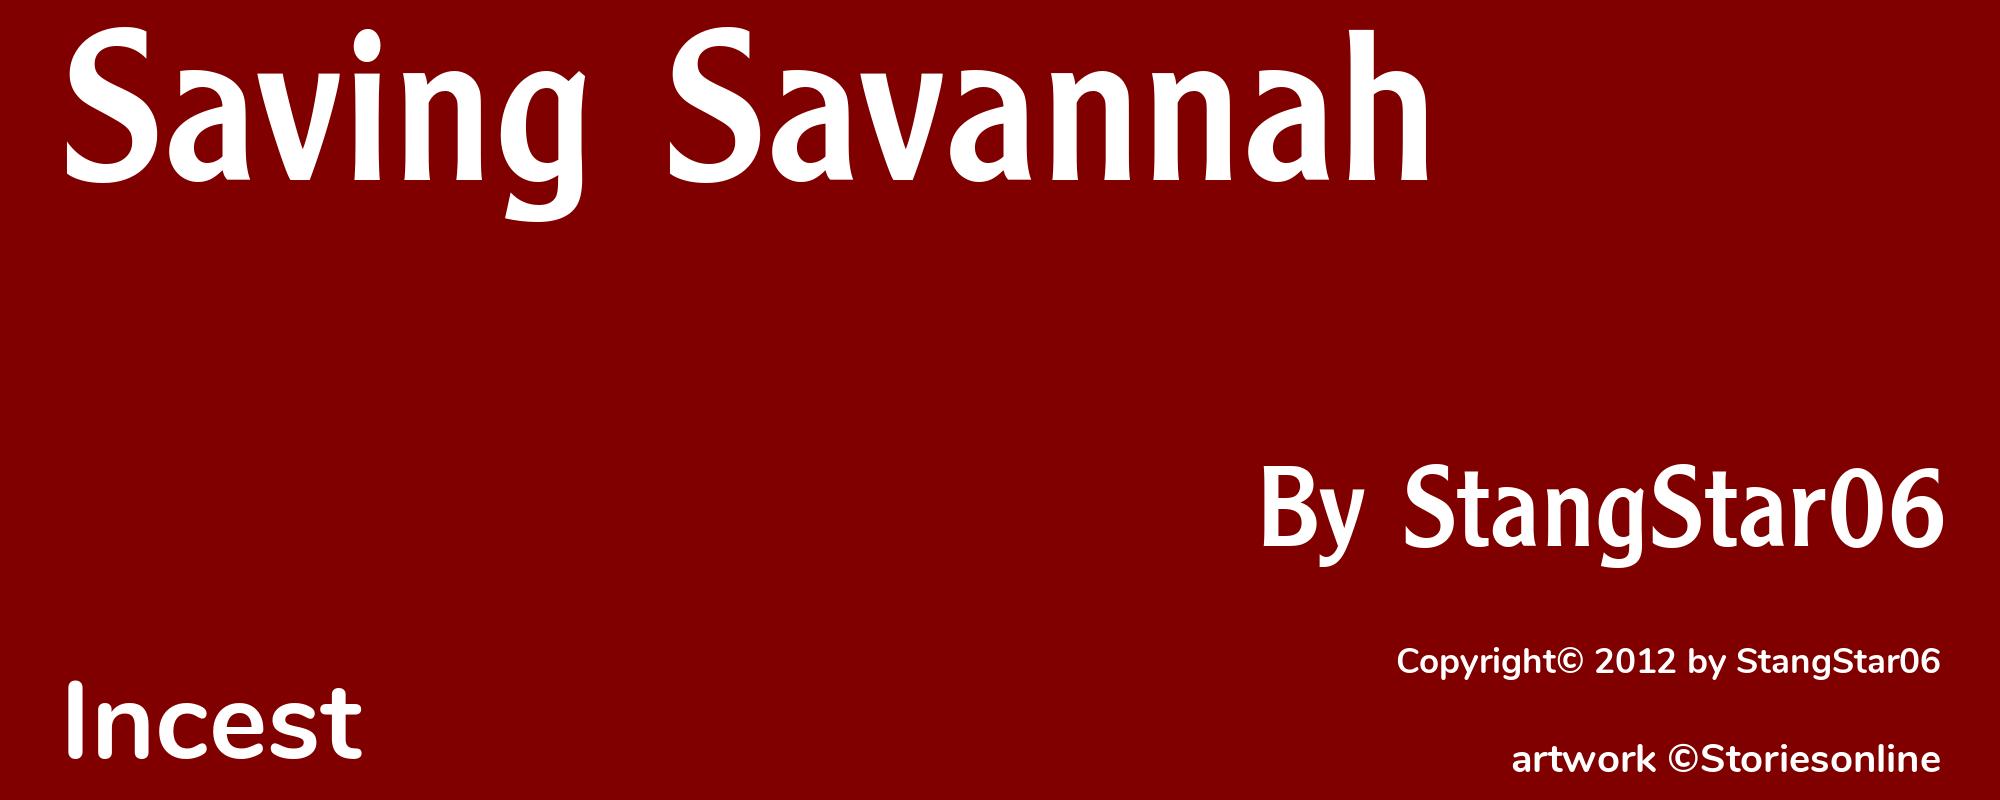 Saving Savannah - Cover